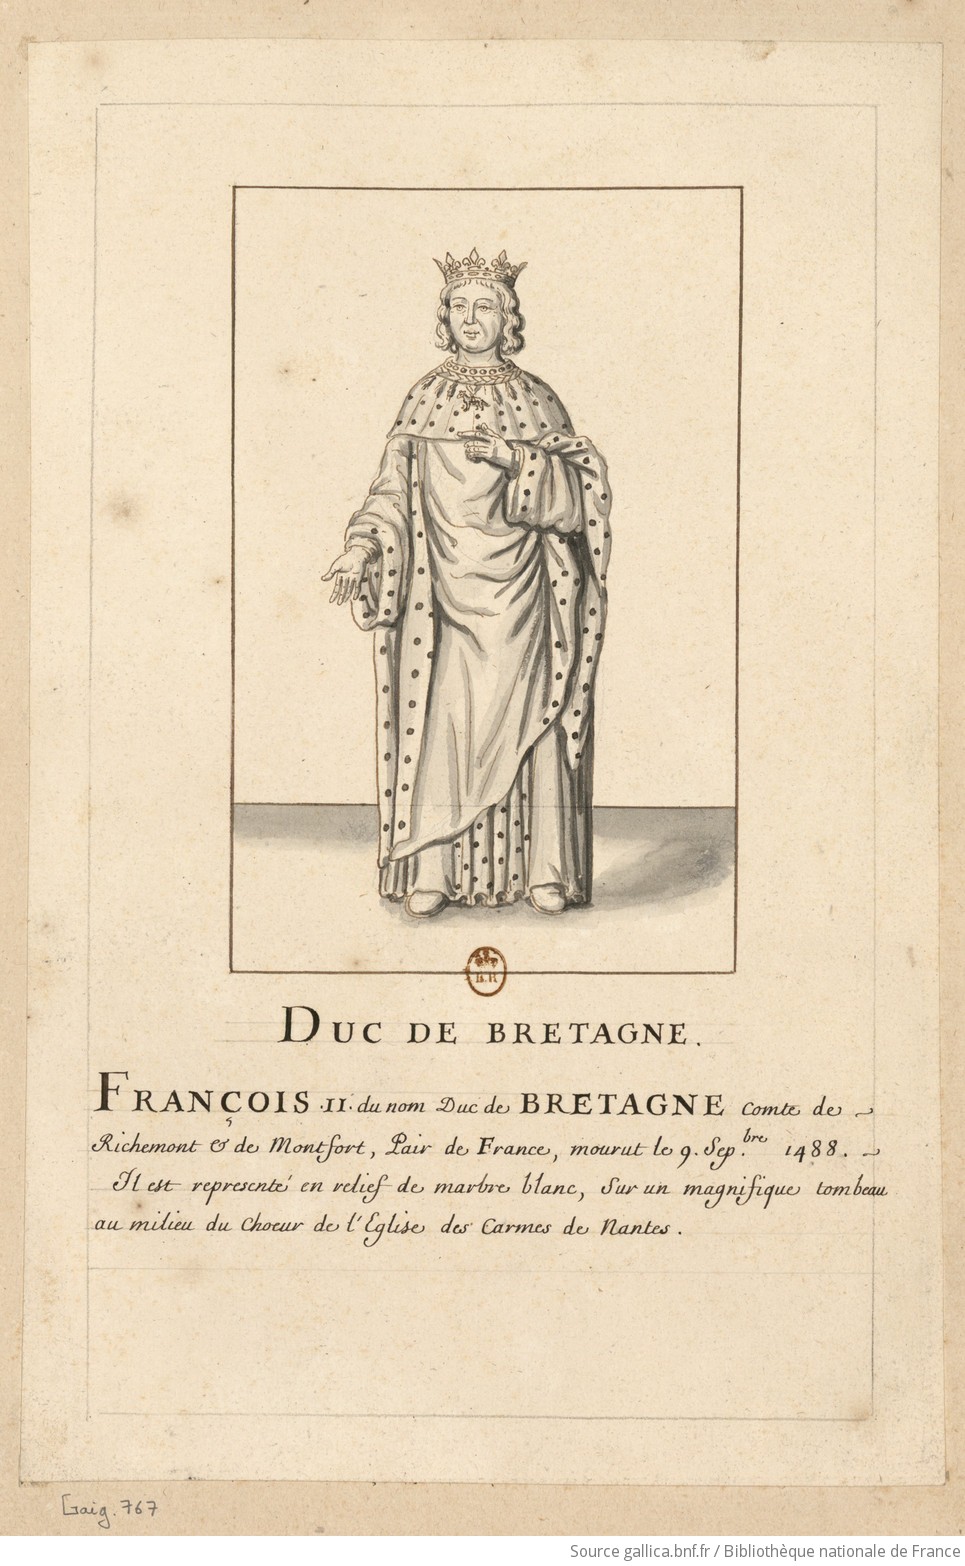 Tombeau de François II de Bretagne au Couvent des Carmes (aujourd'hui dans la cathédrale de Nantes) F1